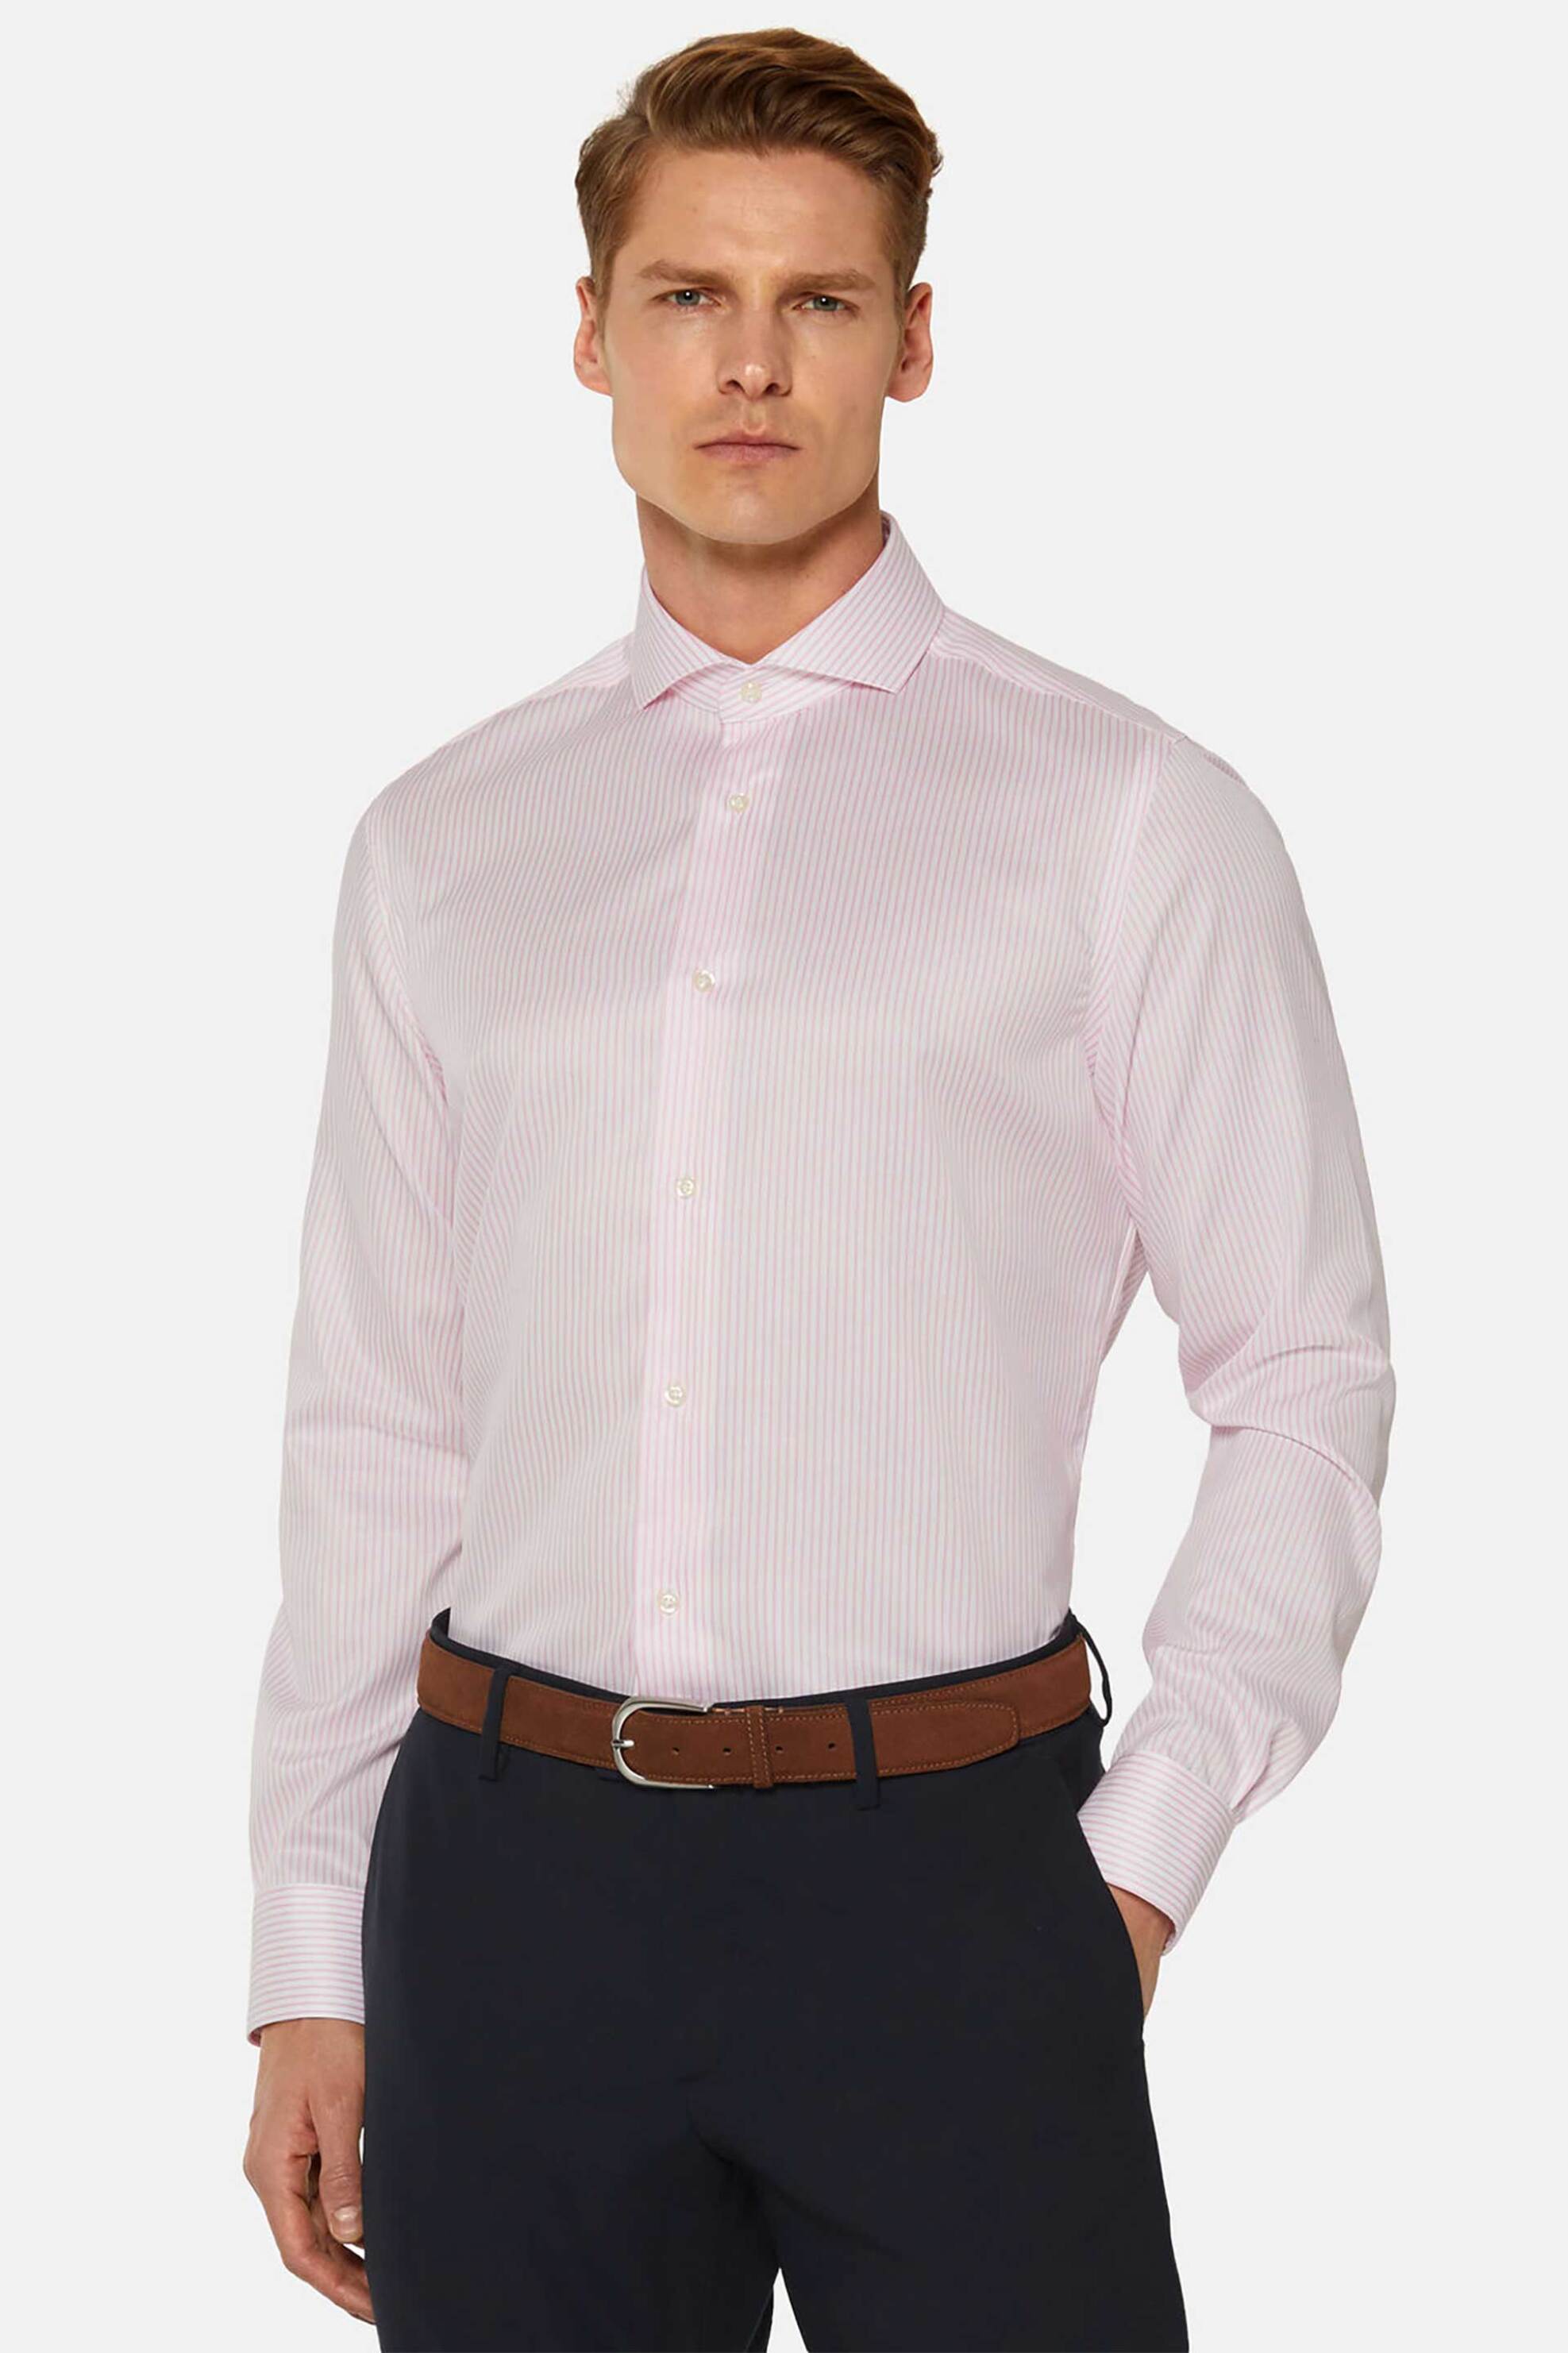 Ανδρική Μόδα > Ανδρικά Ρούχα > Ανδρικά Πουκάμισα > Ανδρικά Πουκάμισα Casual Boggi Milano ανδρικό πουκάμισο με ριγέ σχέδιο Slim Fit - BO24P020803 Ροζ